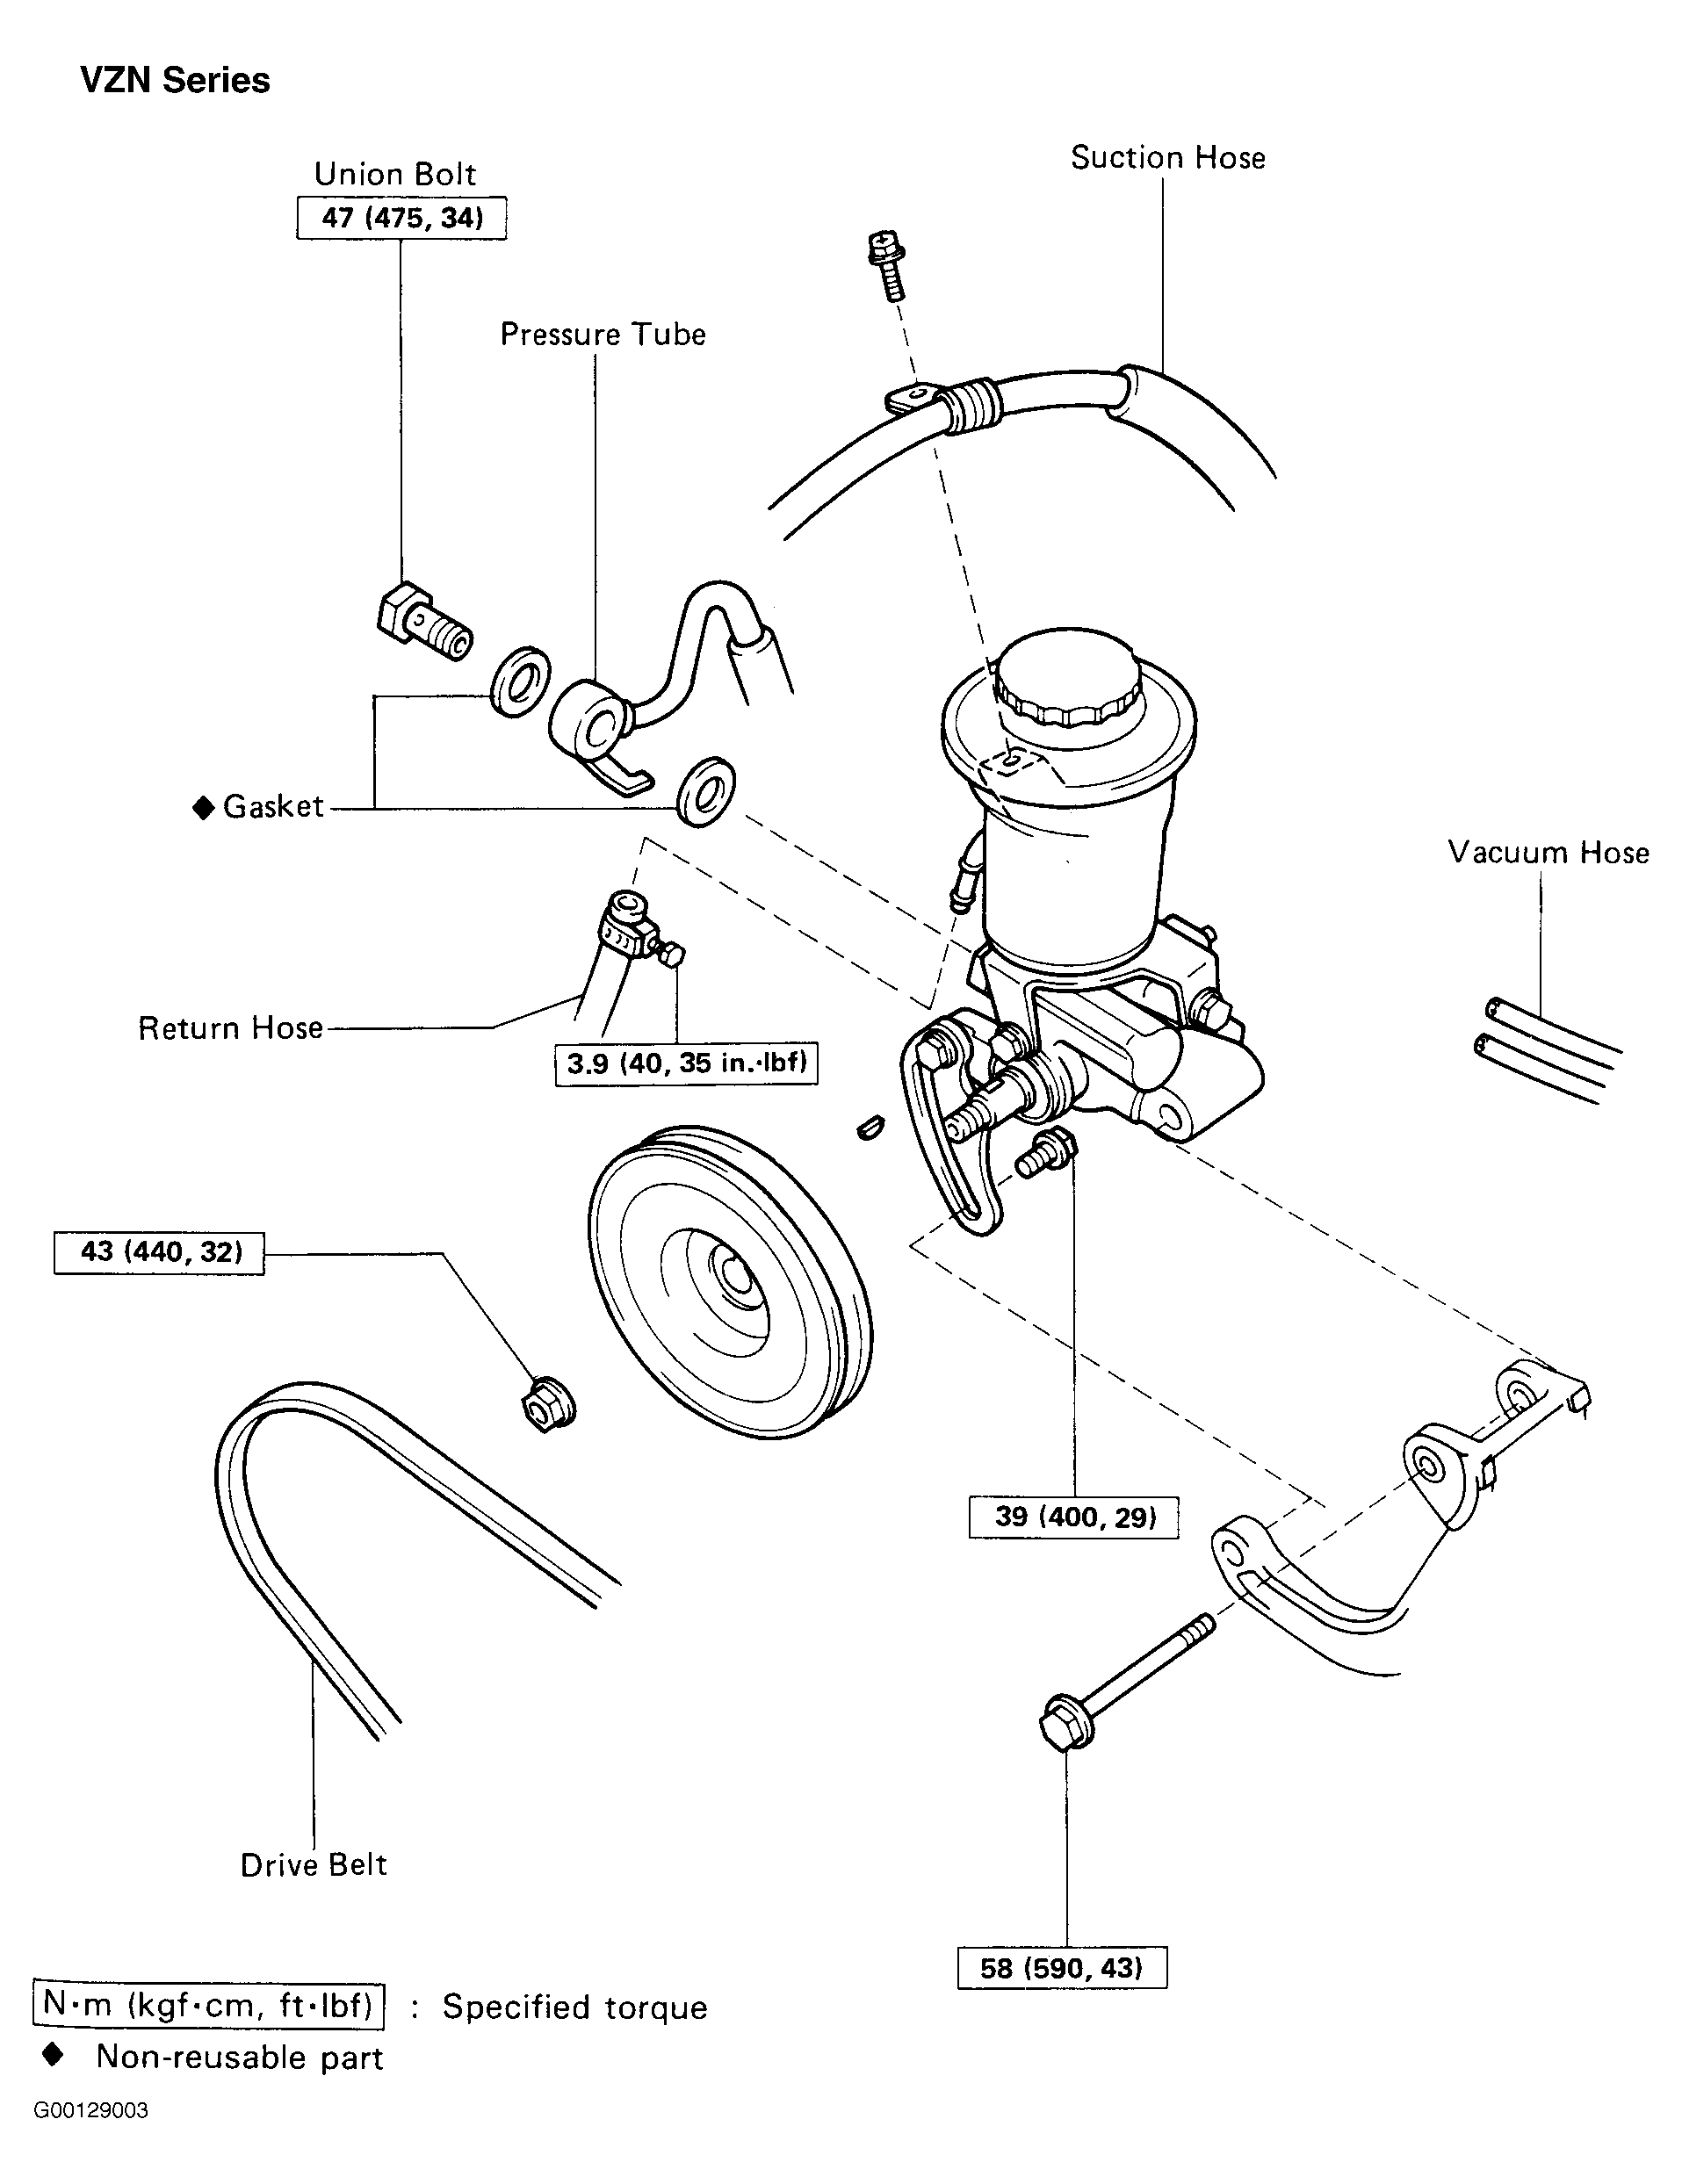 1992 Toyotum Mr2 Wiring Diagram - Wiring Diagram Schema